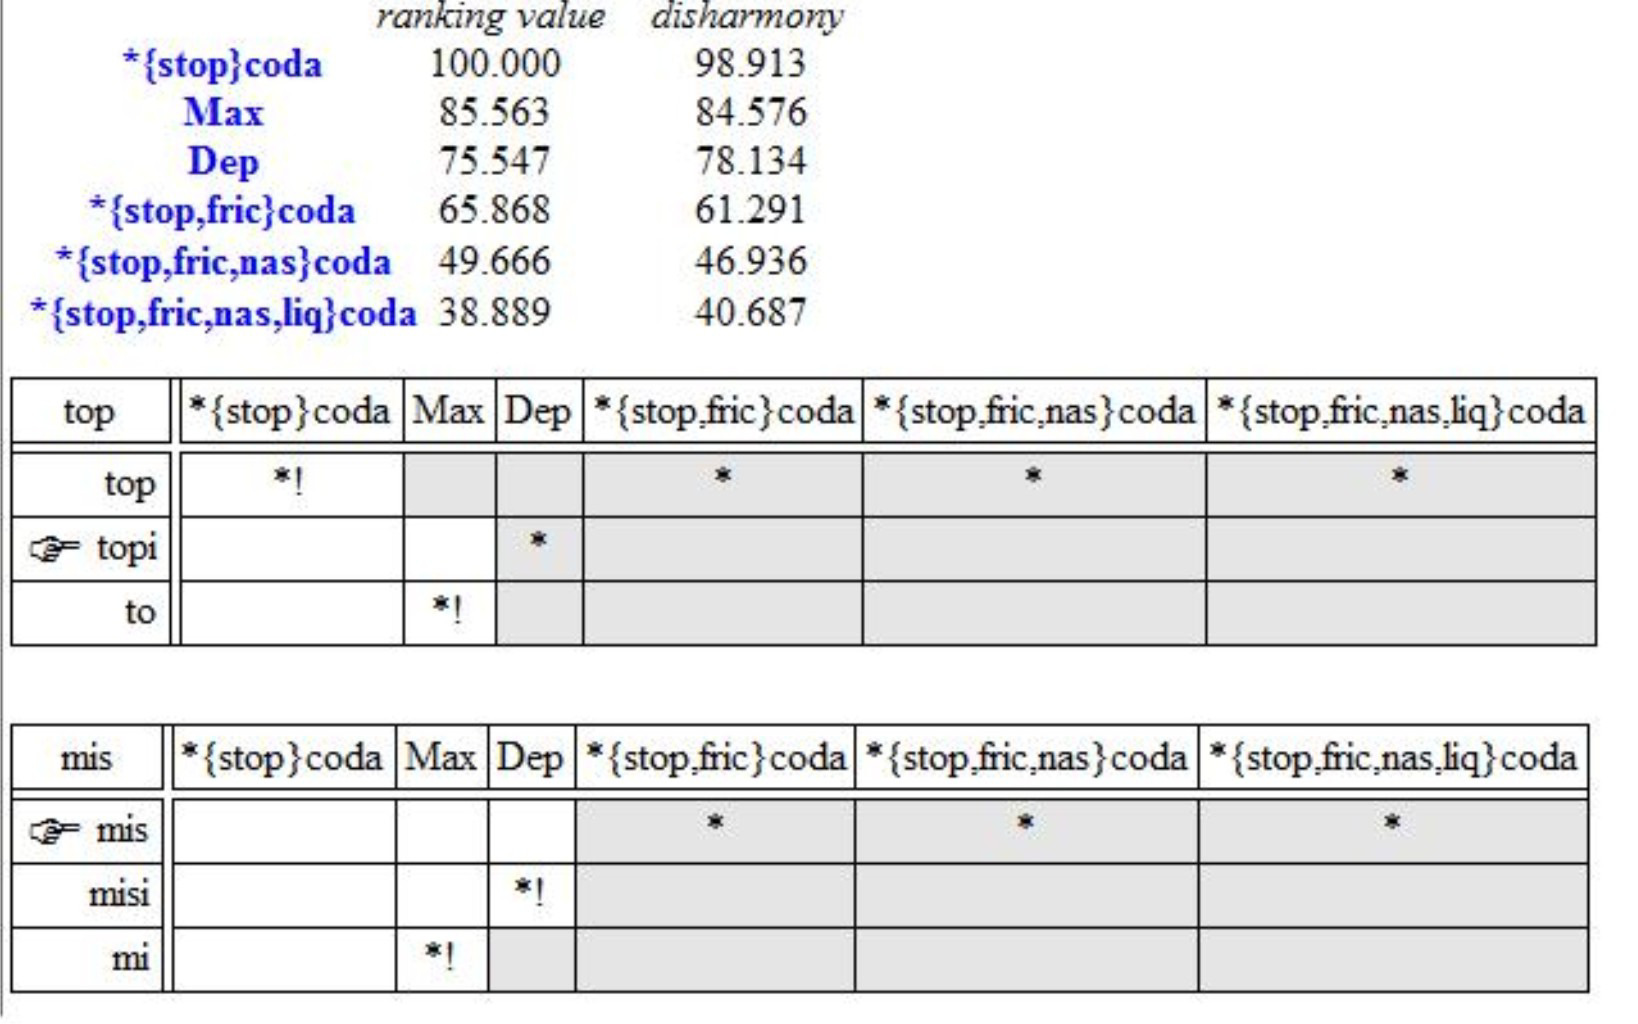 Vogais além de Belo Horizonte o algoritmo deveria convergir, portanto, em um ranking tal como *{stop} coda >> DEP >> *{stop,fric} coda.